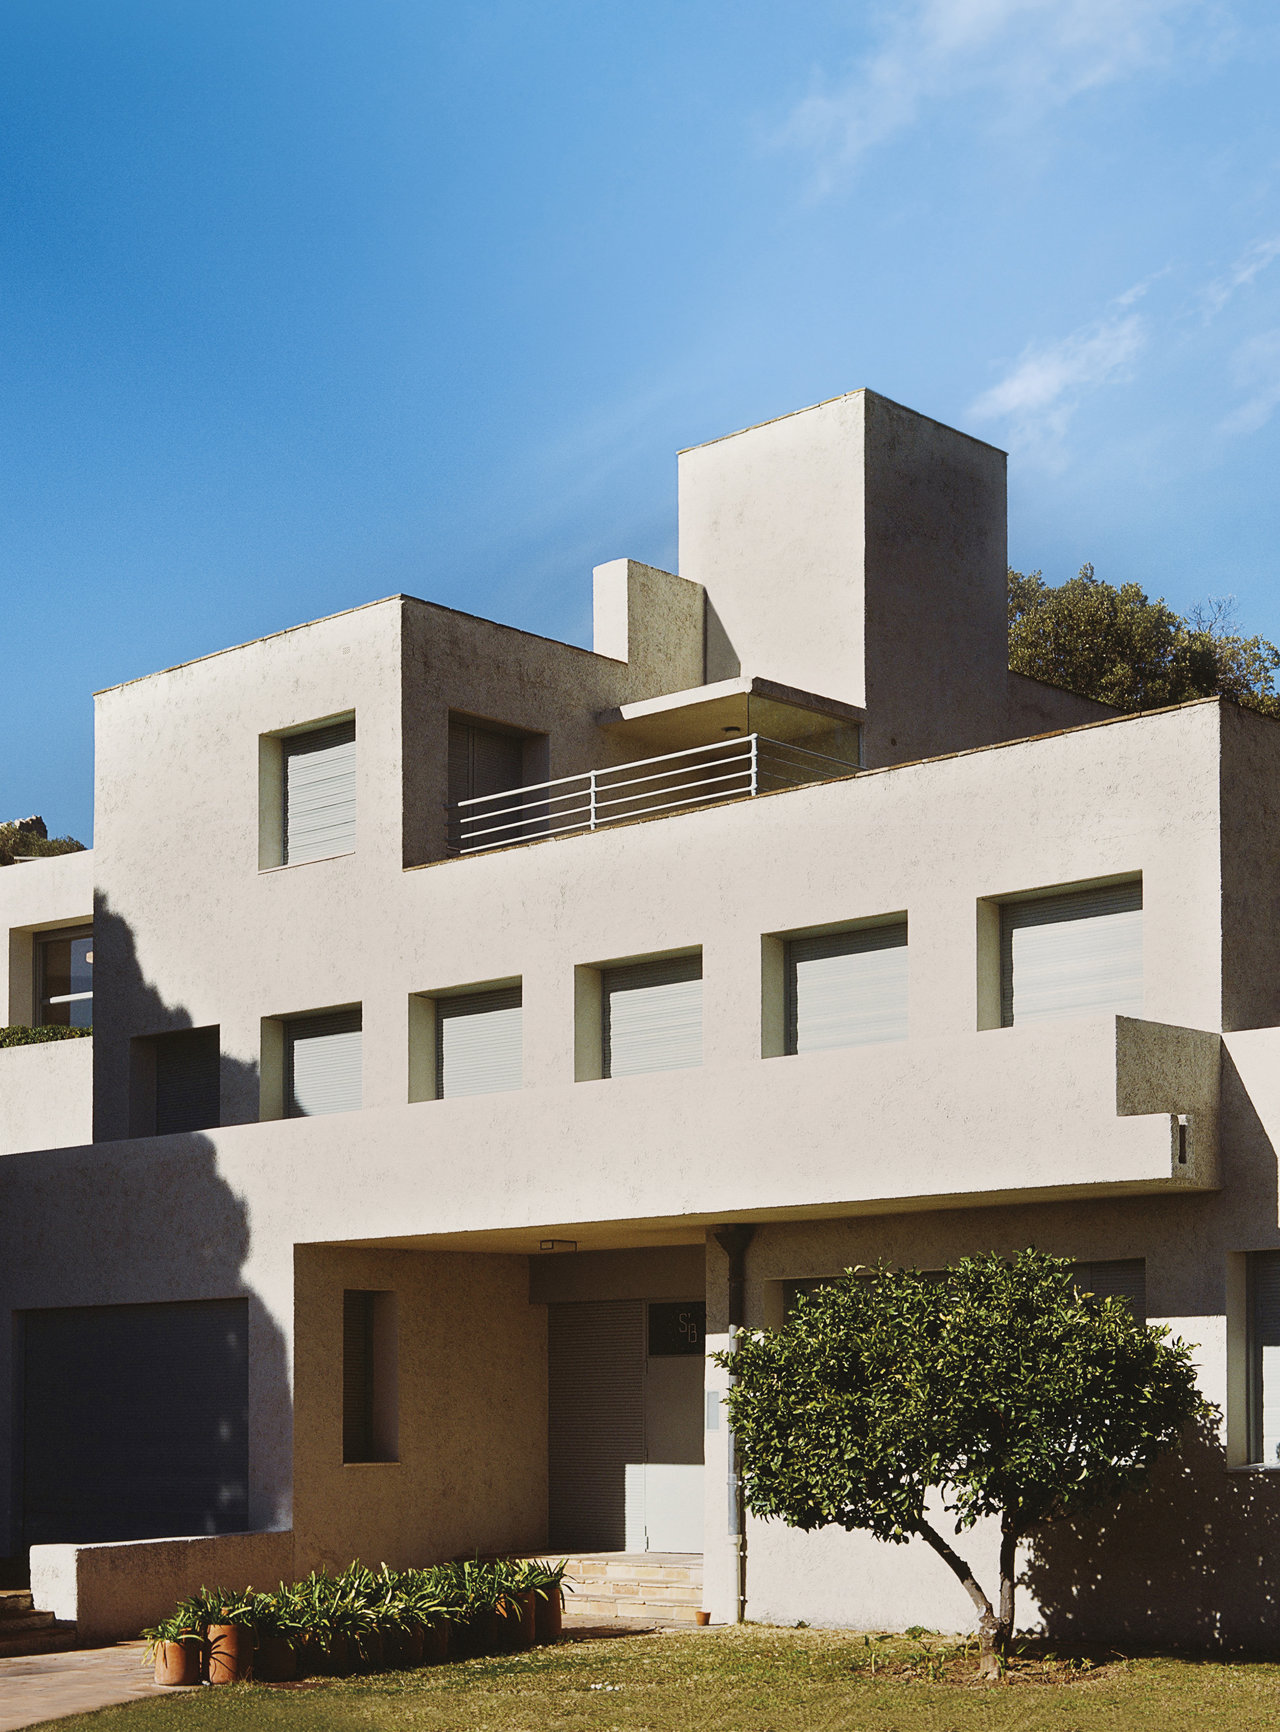 Robert Mallet-Stevens diseñó la casa como una superposición de cubos de hormigón gris